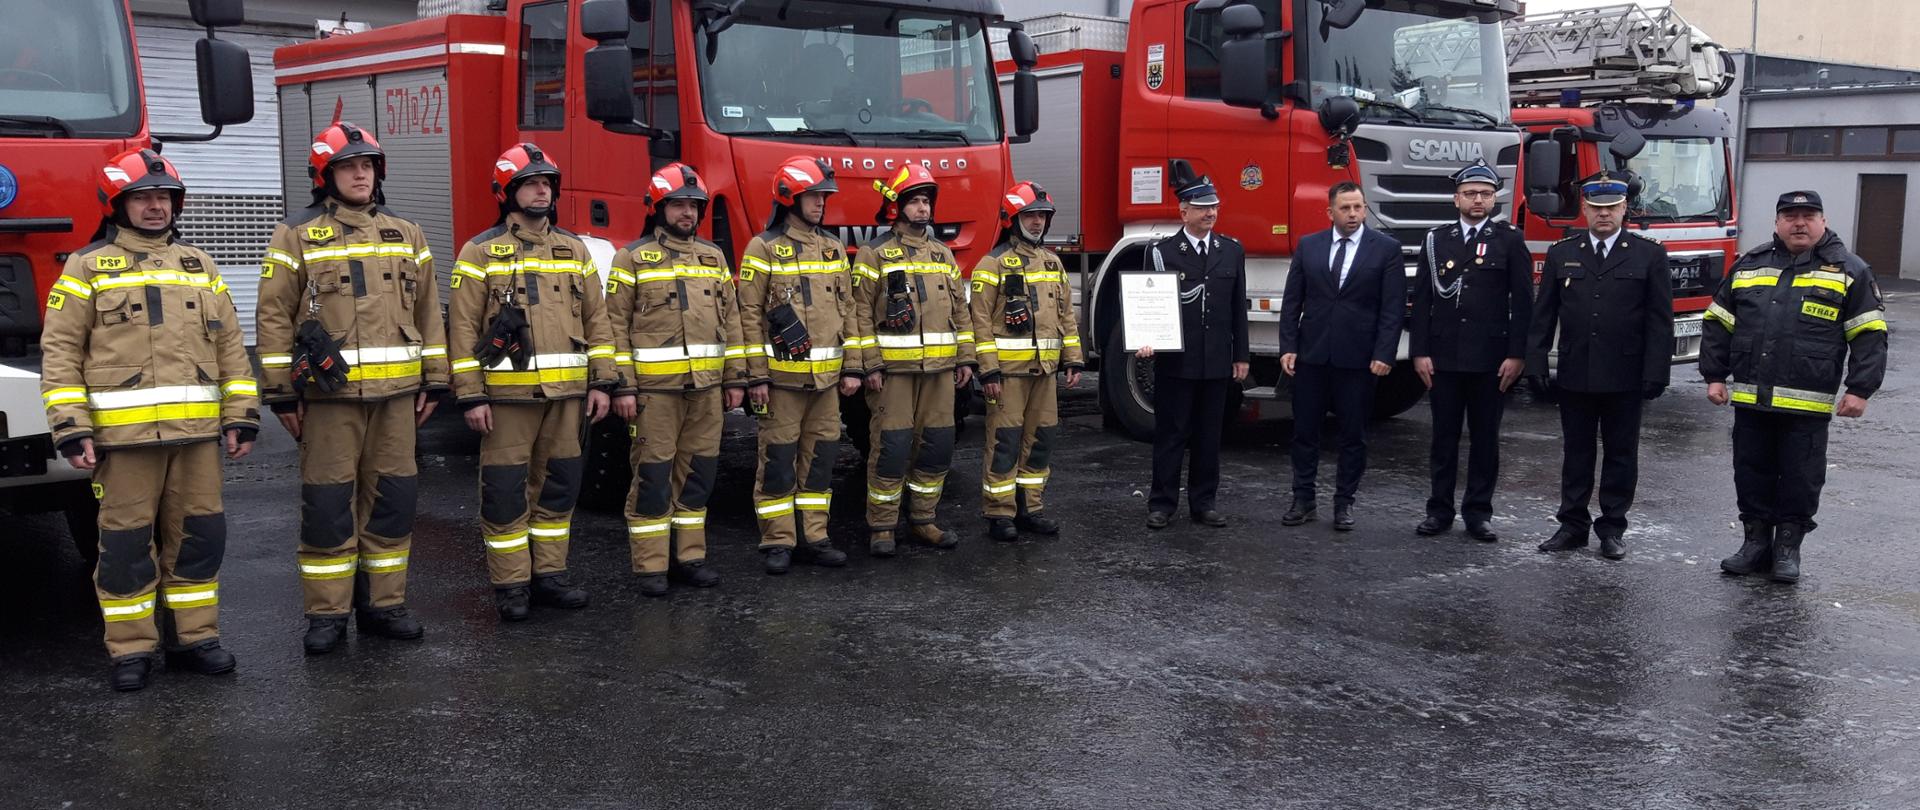 Ustawieni w rzędzie strażacy w mundurach bojowych obok nich Komendant Powiatowy z Zastępcą oraz przedstawicielam Gminy Prusice, Komendantem Gminnym OSP Prusice oraz Prezesem OSP Pawłów Trzebnicki